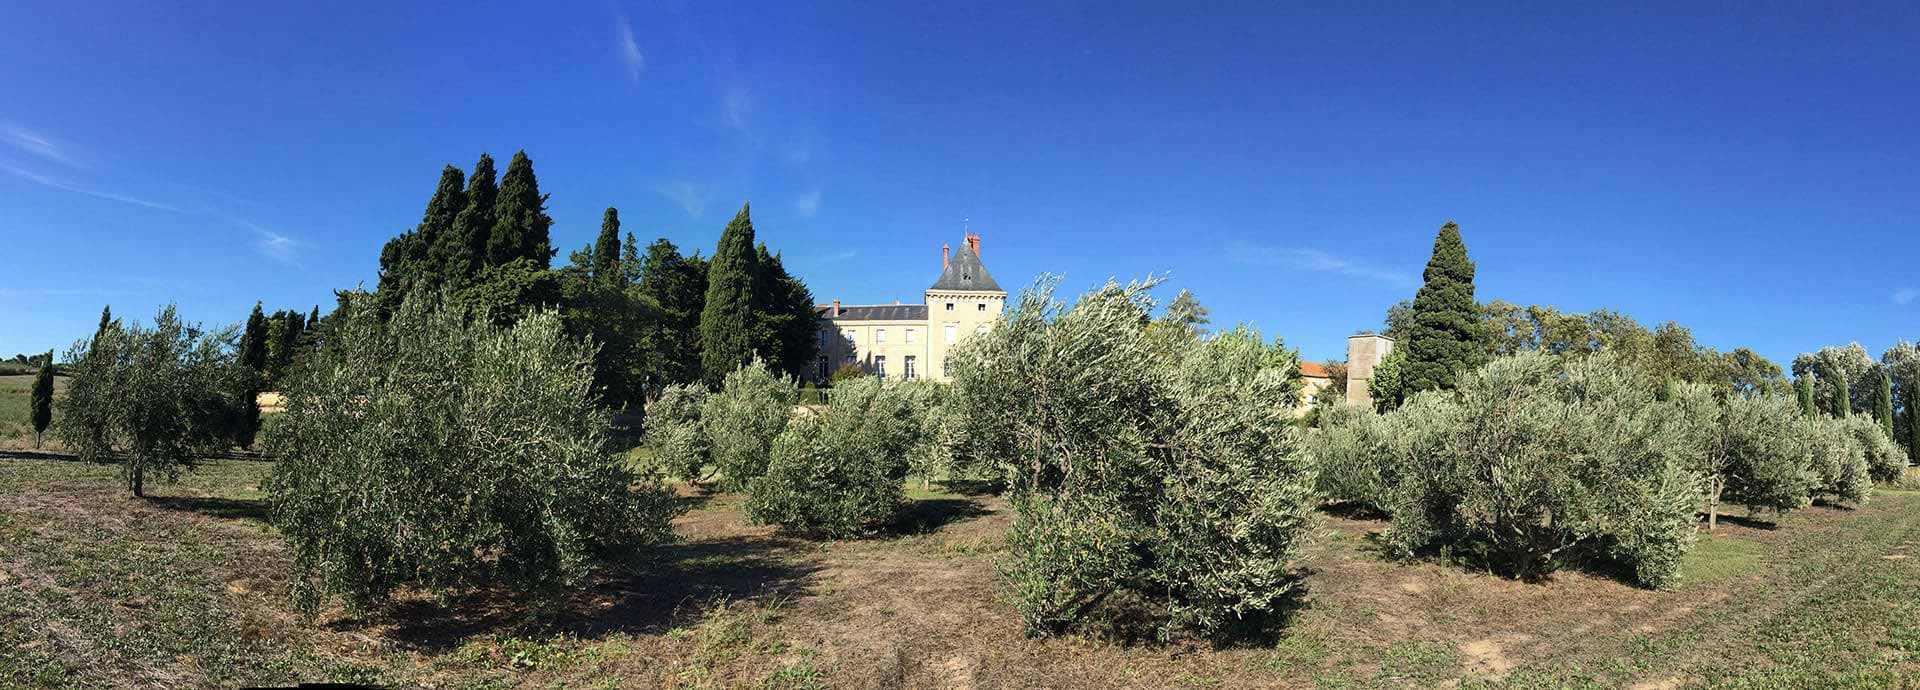 Ontdek de biodiversiteit van de 120 hectare van Domaine la Vernède, chambres d’hôtes vlakbij Béziers